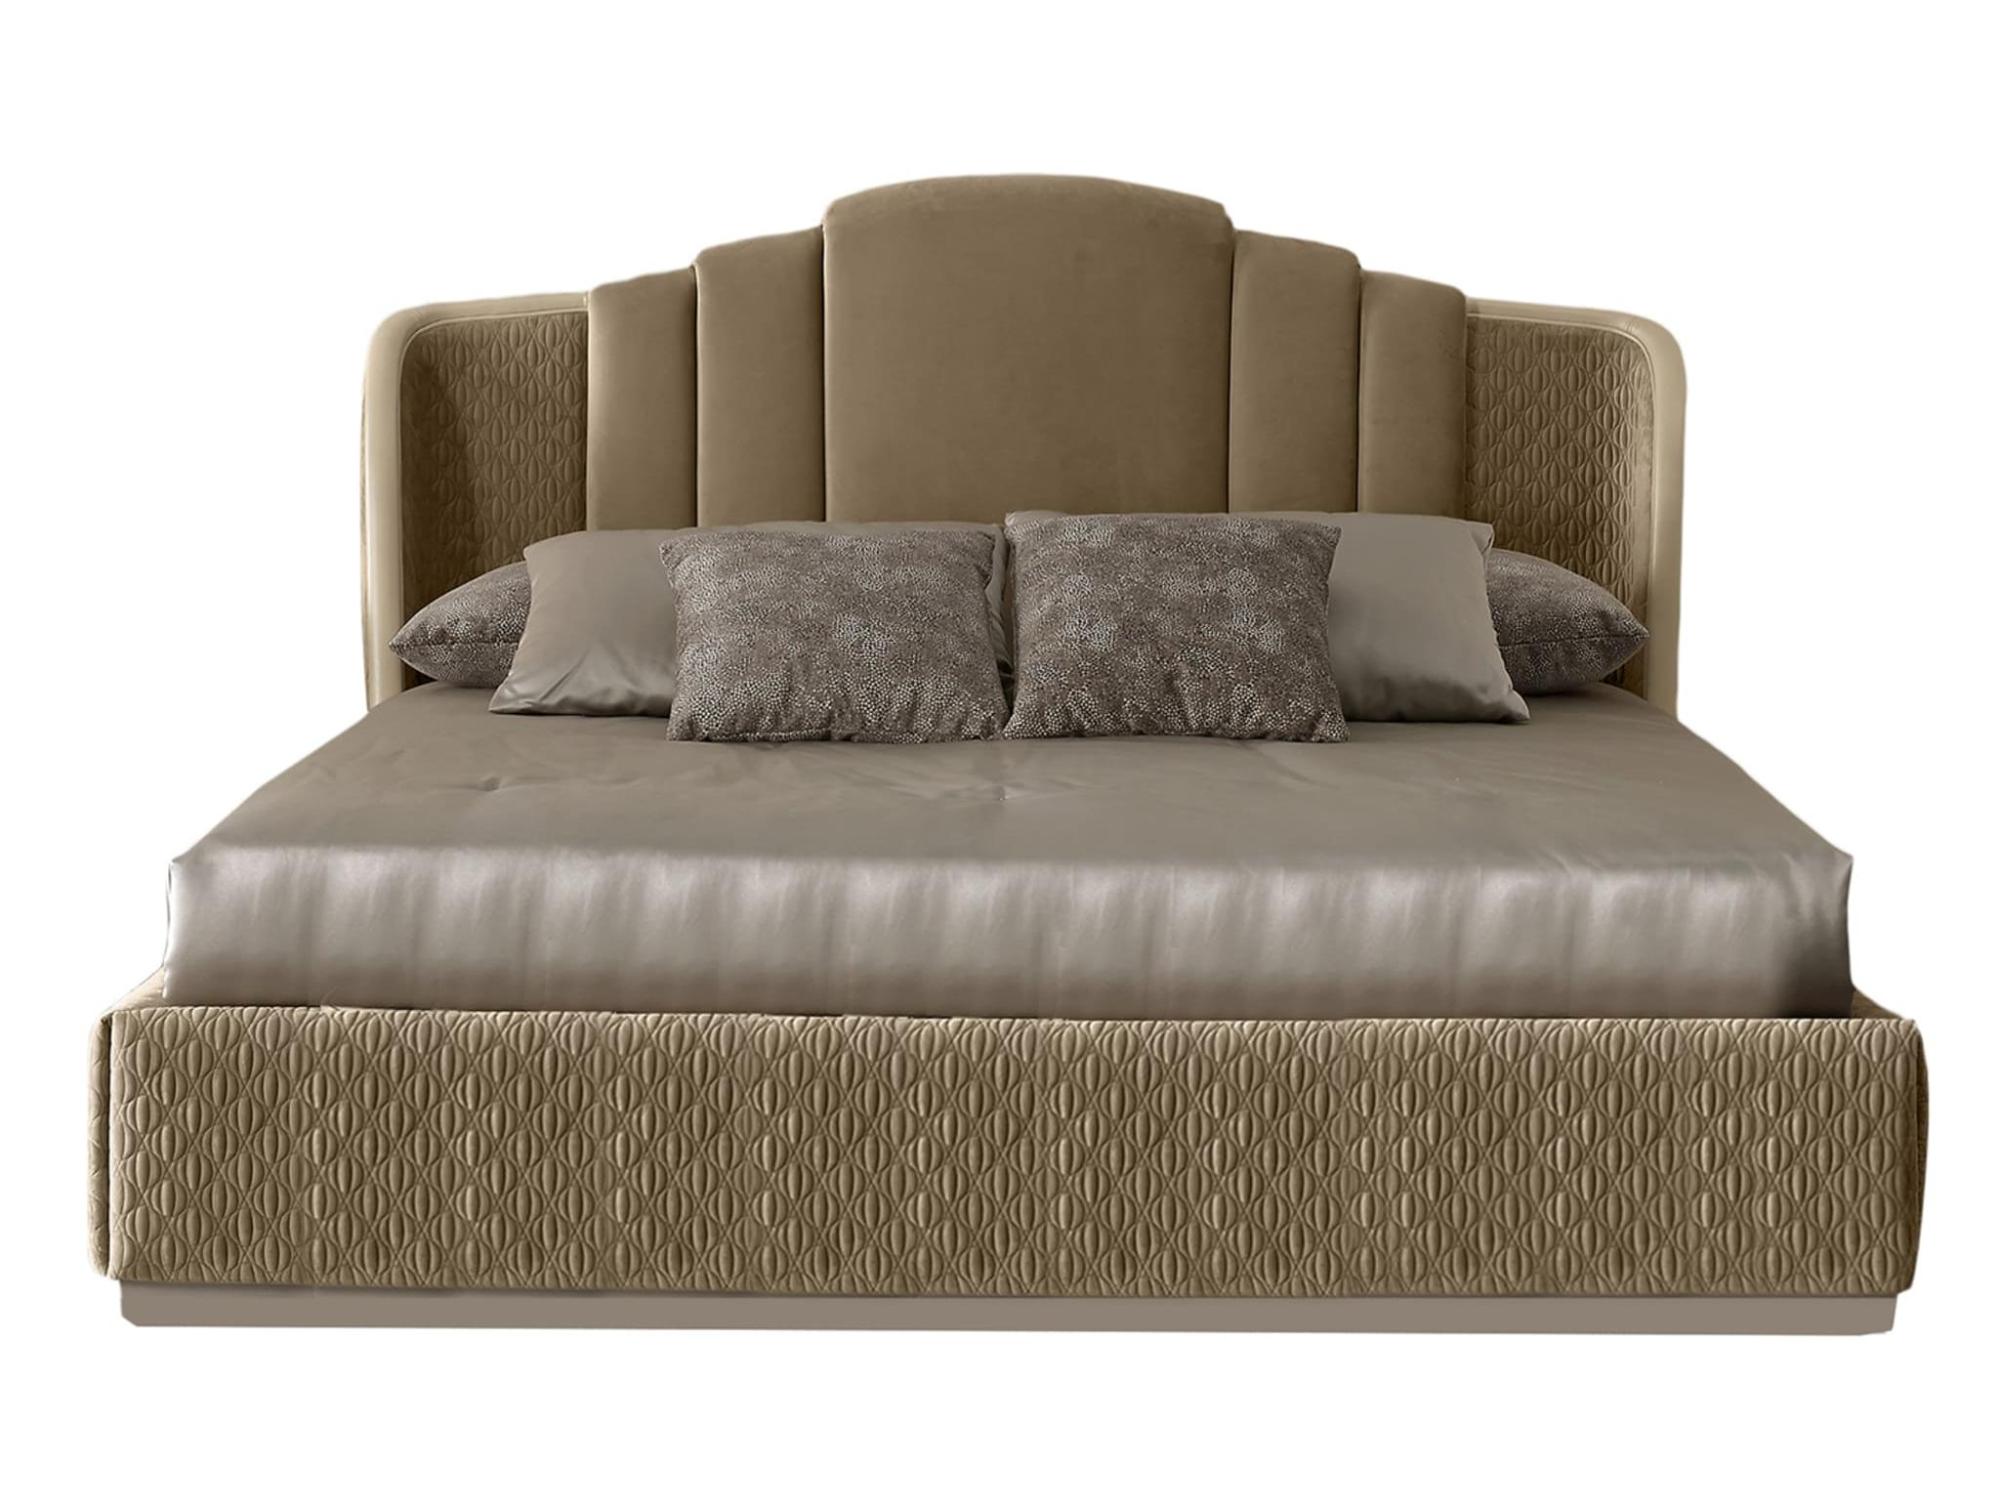 Opulent Beige Luxury Bed